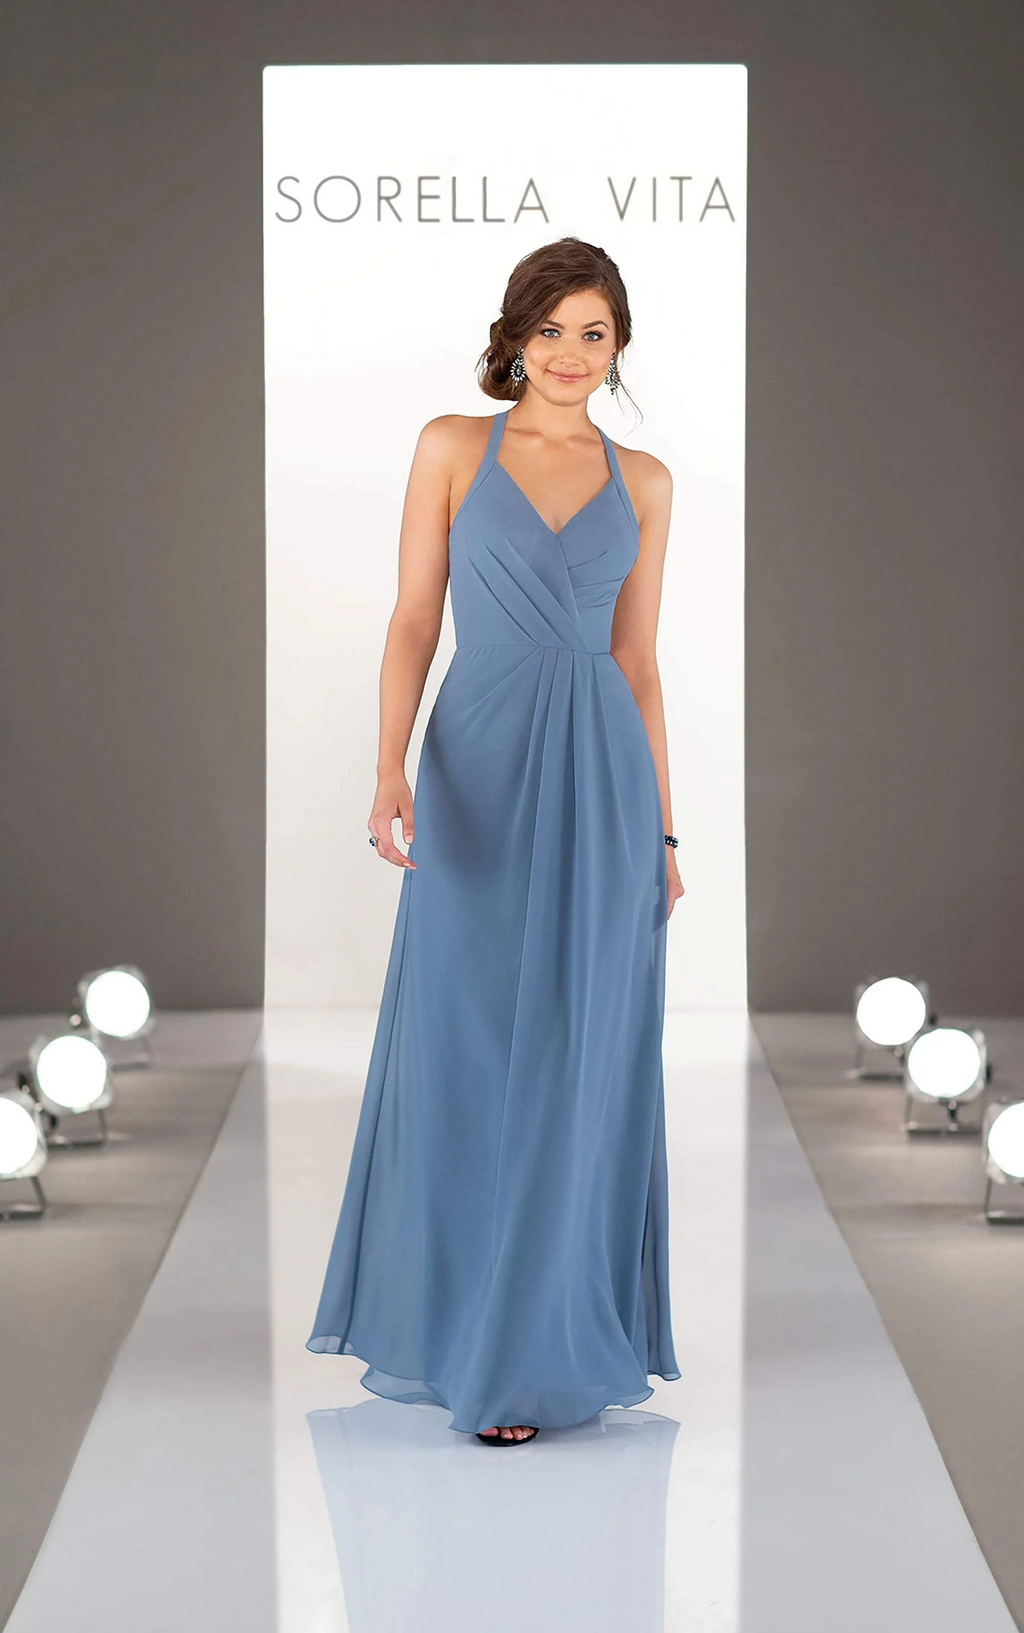 Sorella Vita Dress Style 9224 (Bluestone-Size 14) Prom, Ball., Black-tie, Bridesmaid, Pageant